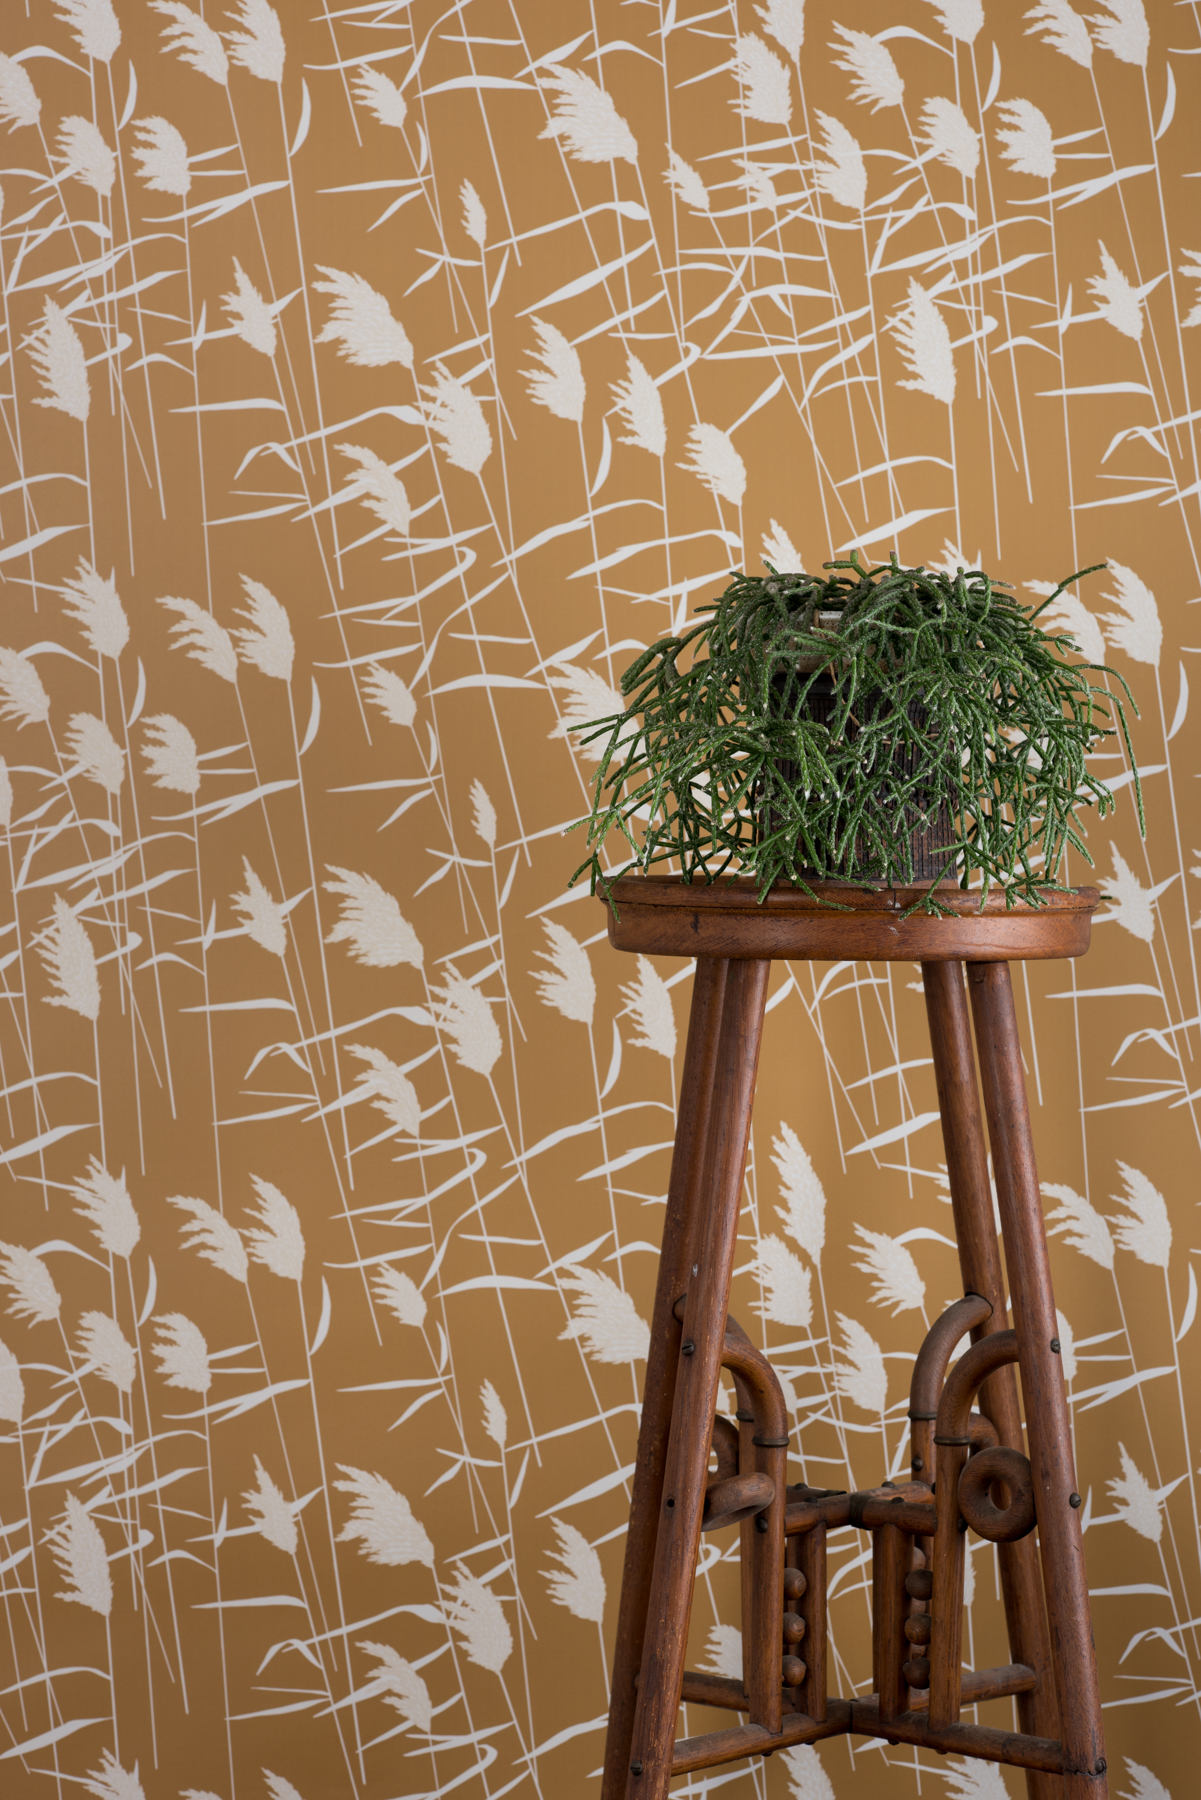 Kate Golding Grasses (Dusk) wallpaper // Modern wallcoverings and interior decor.